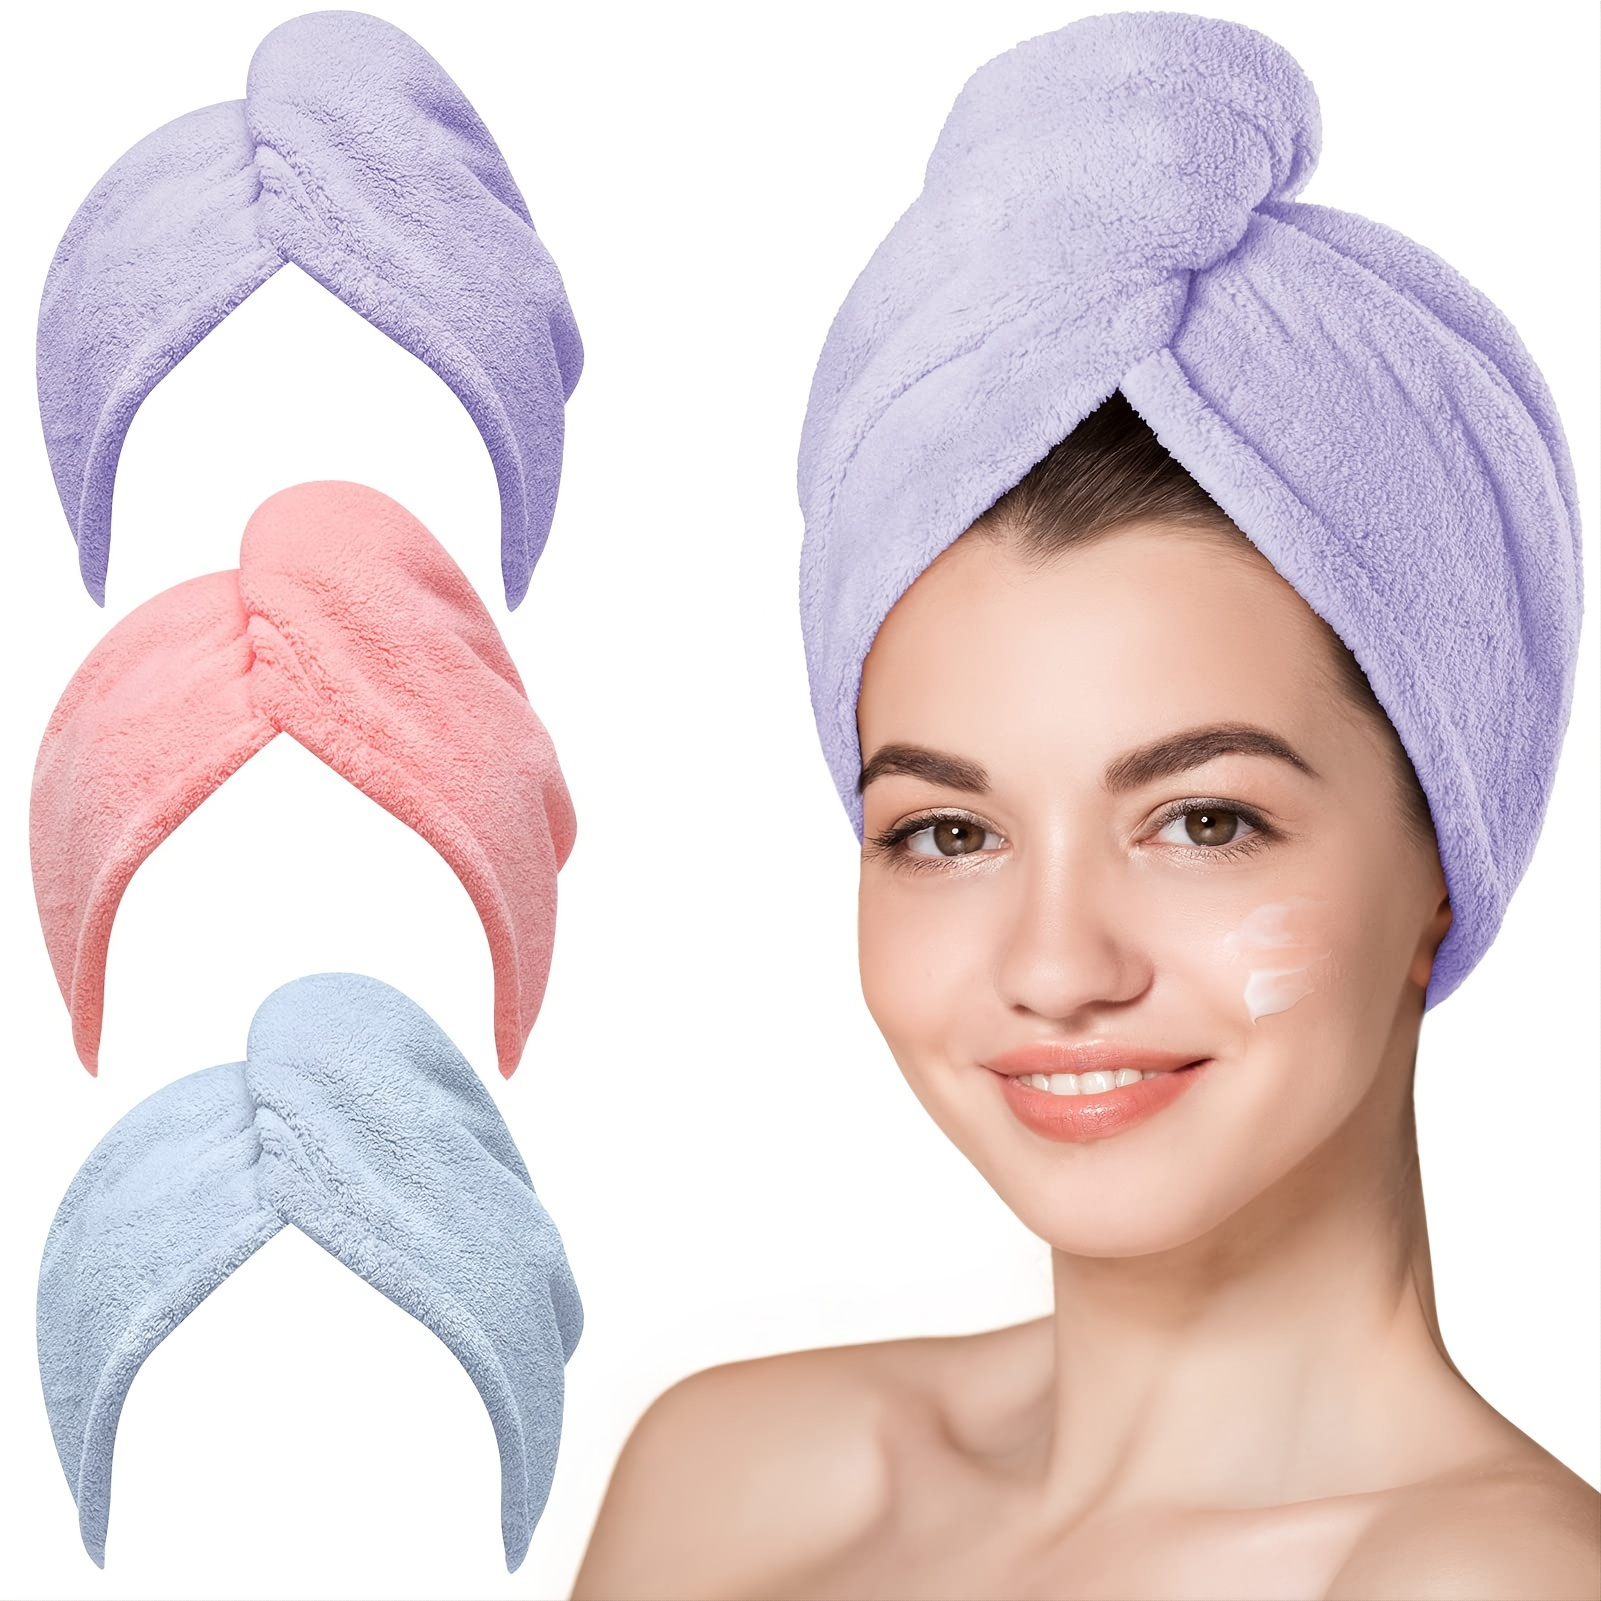 Acerca de los beneficios y usos de las toallas faciales - Noticias -  Weifang Shuntai Textile Co., Ltd